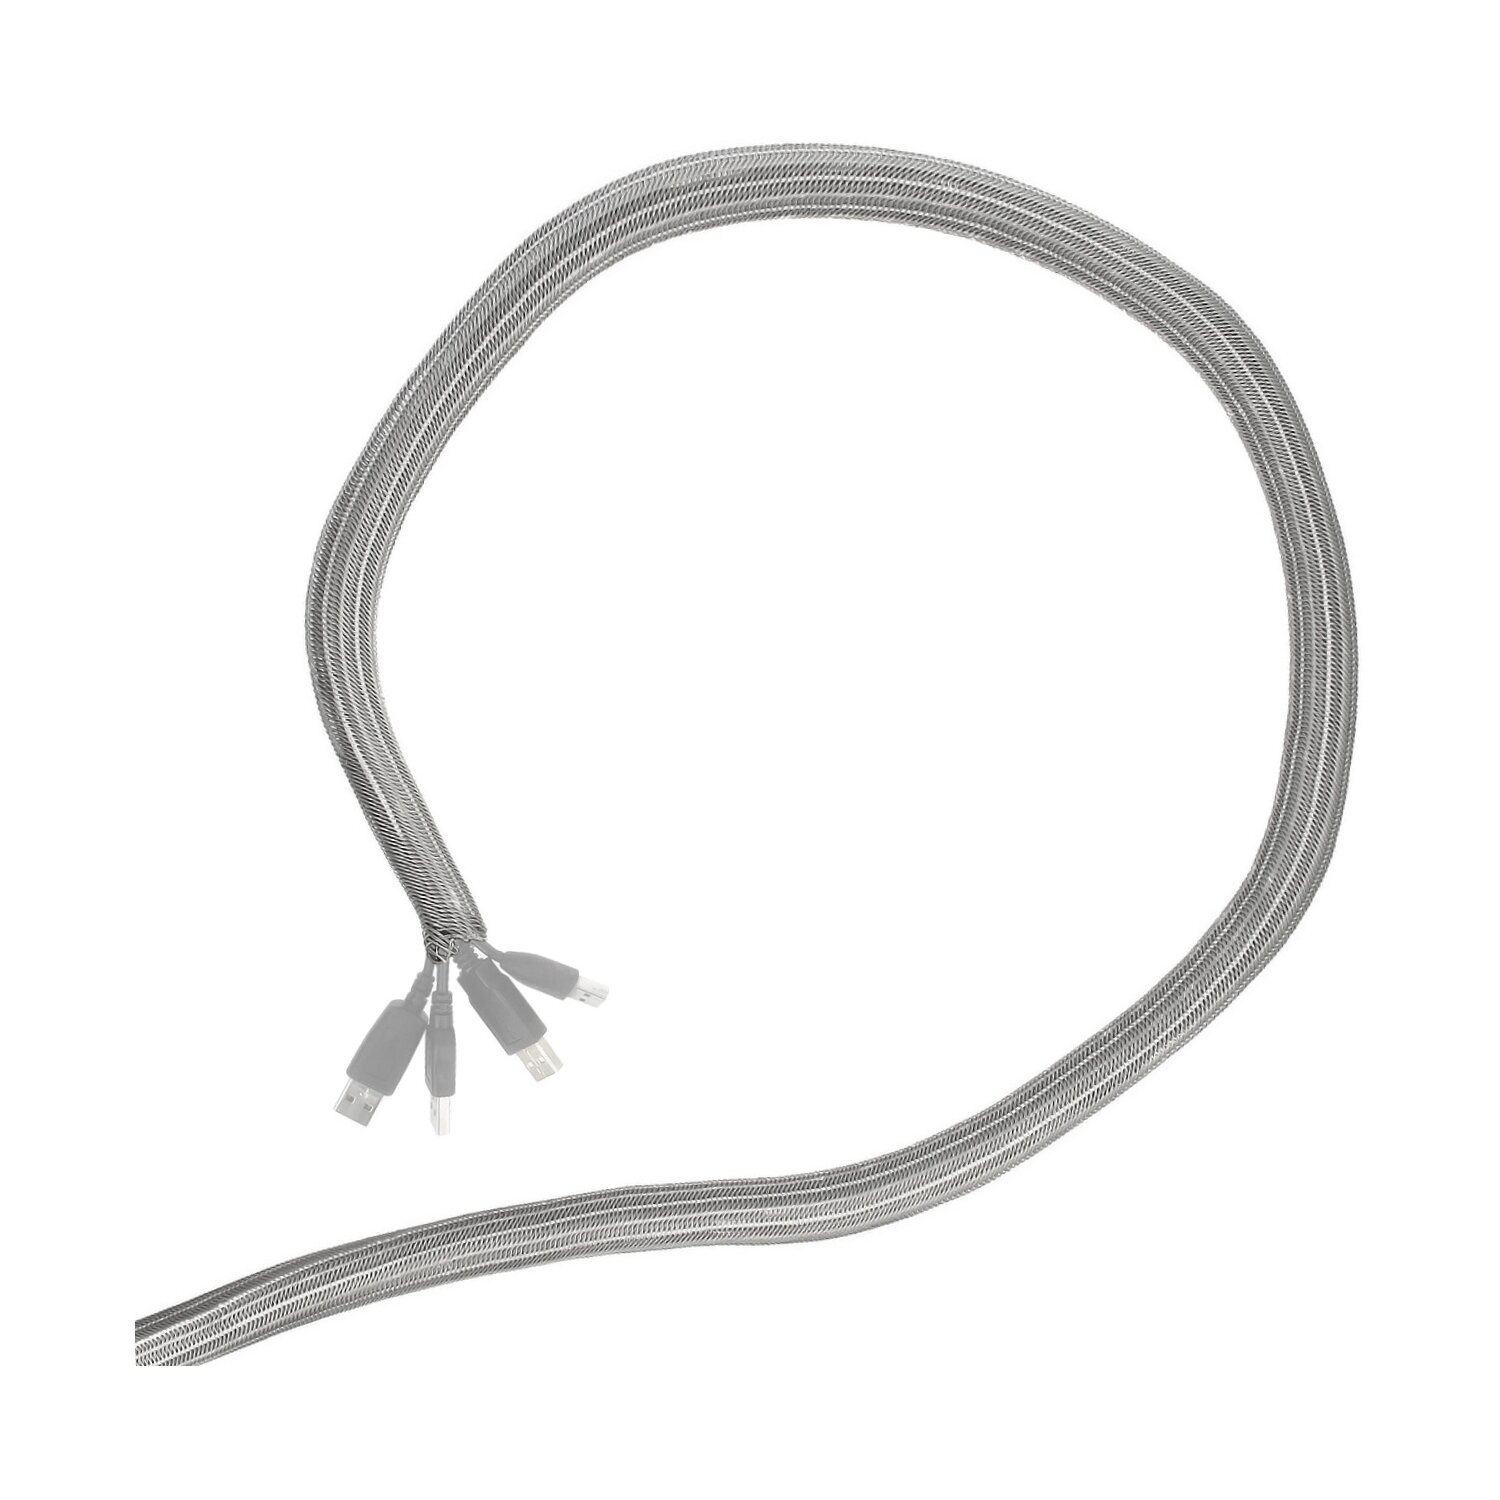 Minadax® 1 Meter, 13mm Ø Selbstschließender Profi Kabelschlauch Kabelkanal in grau für flexibles Kabelmanagement